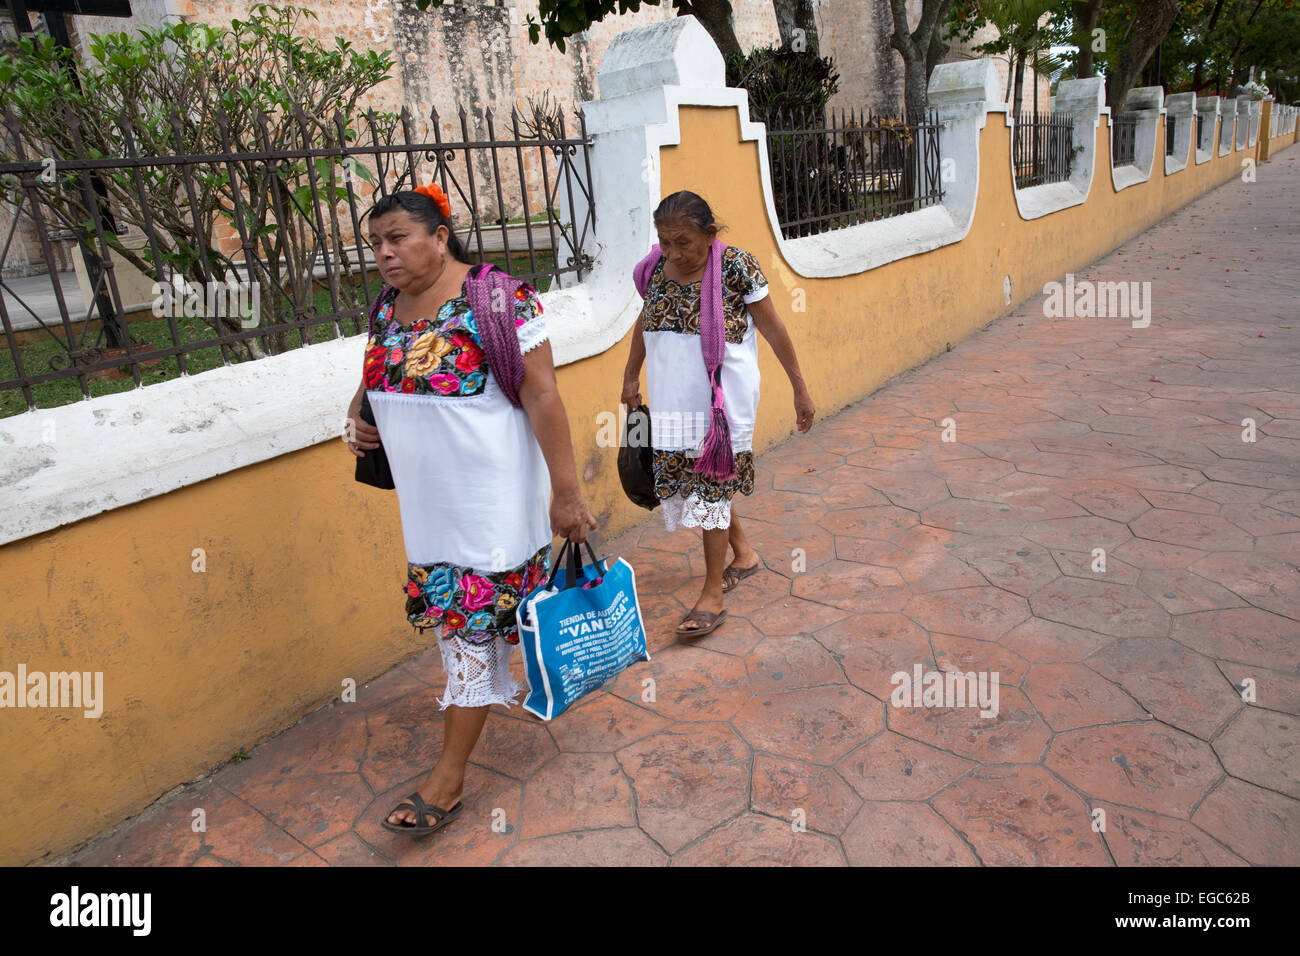 Las mujeres mayas, Valladolid, Yucatán, México. Foto de stock